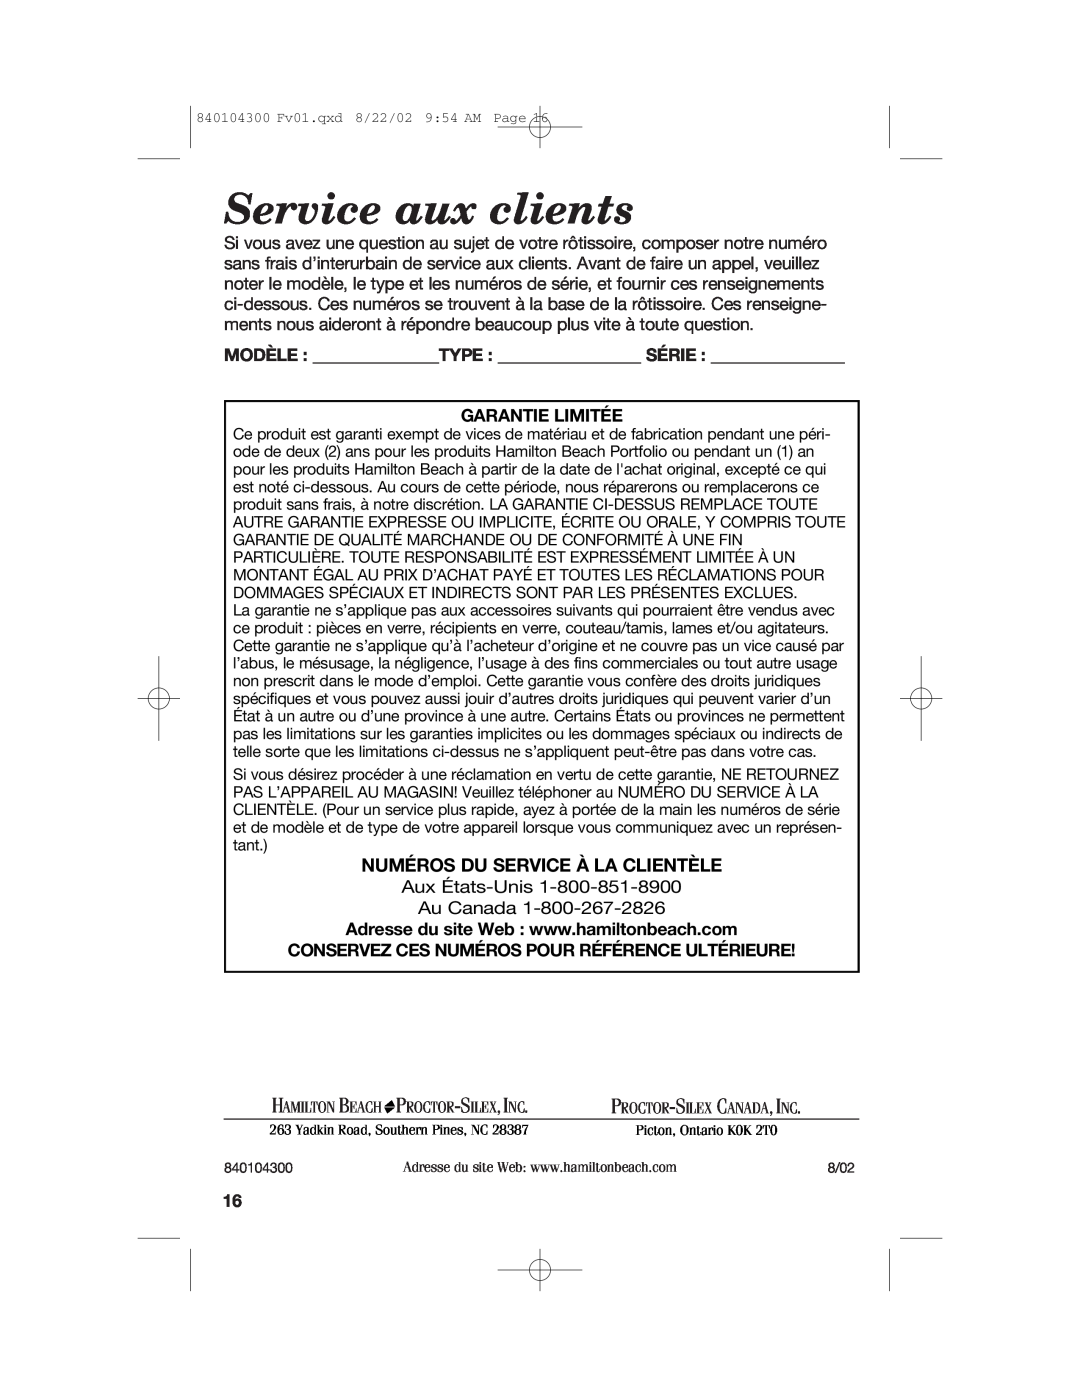 Hamilton Beach 32180C manual Service aux clients, Numéros Du Service À La Clientèle, Garantie Limitée 